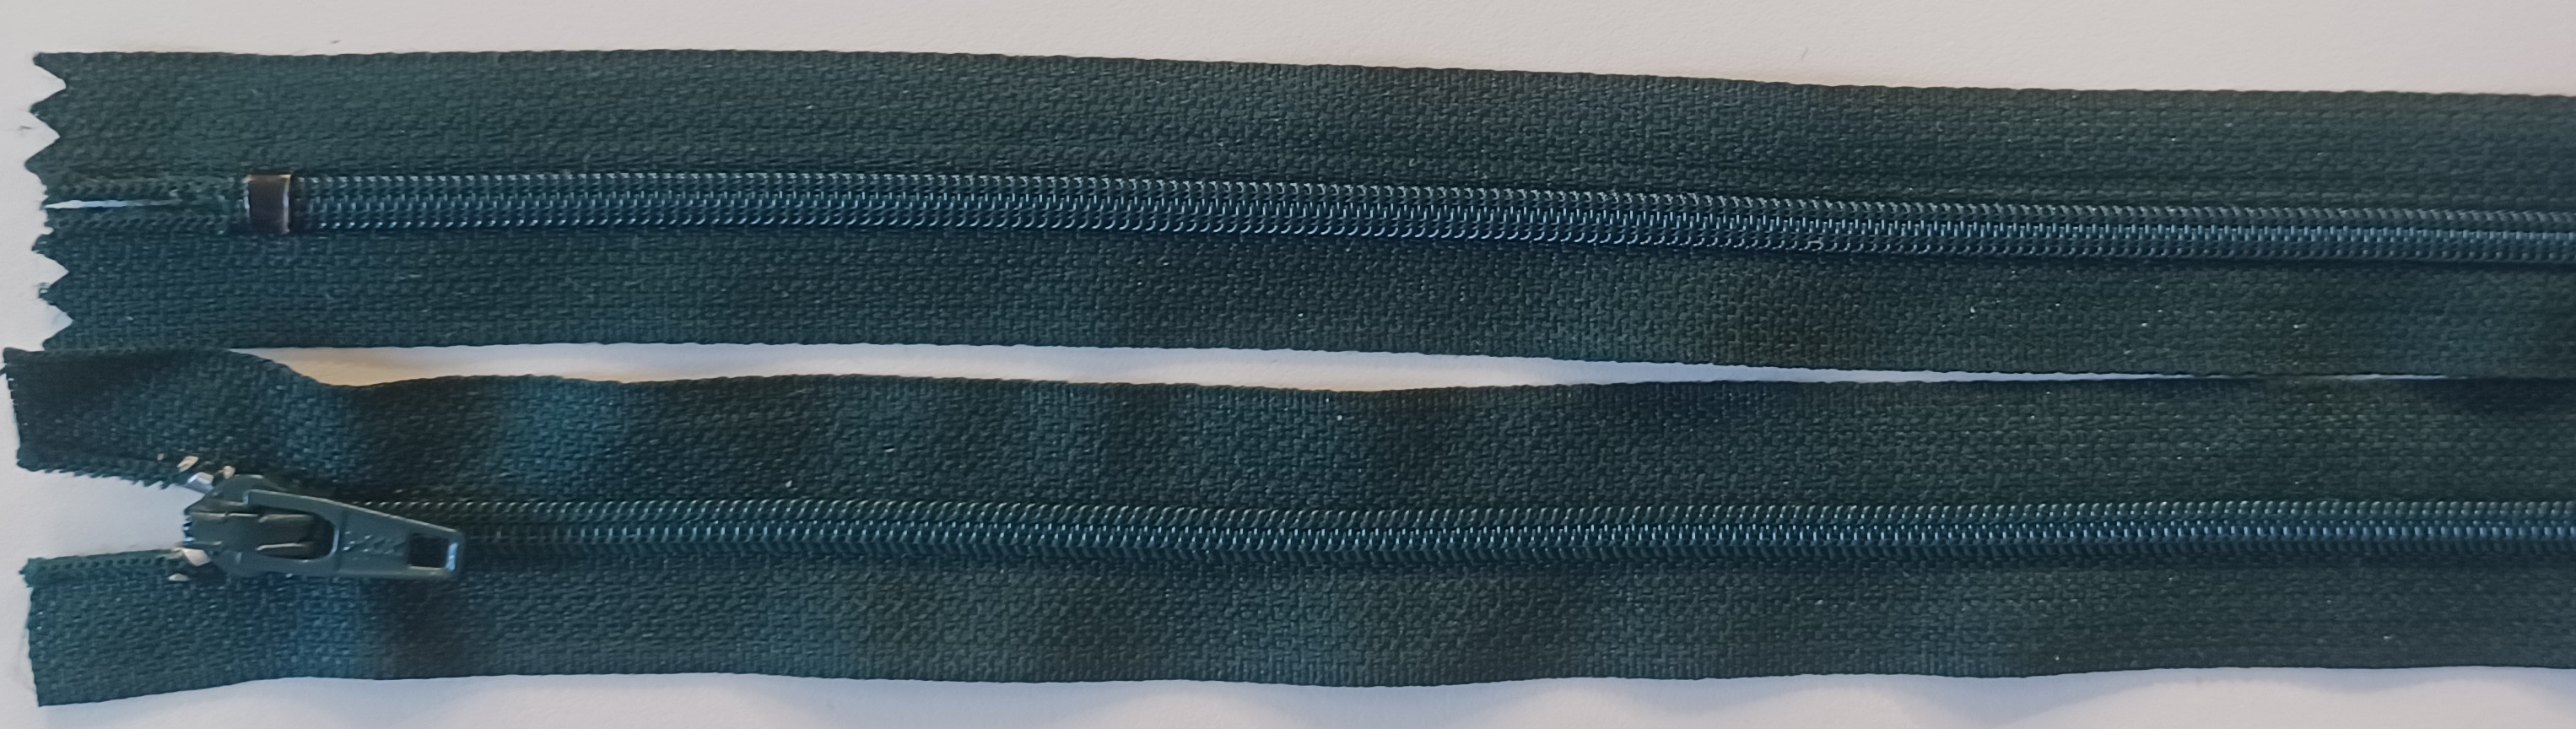 YKK 8" Dark Green Nylon Coil Zipper